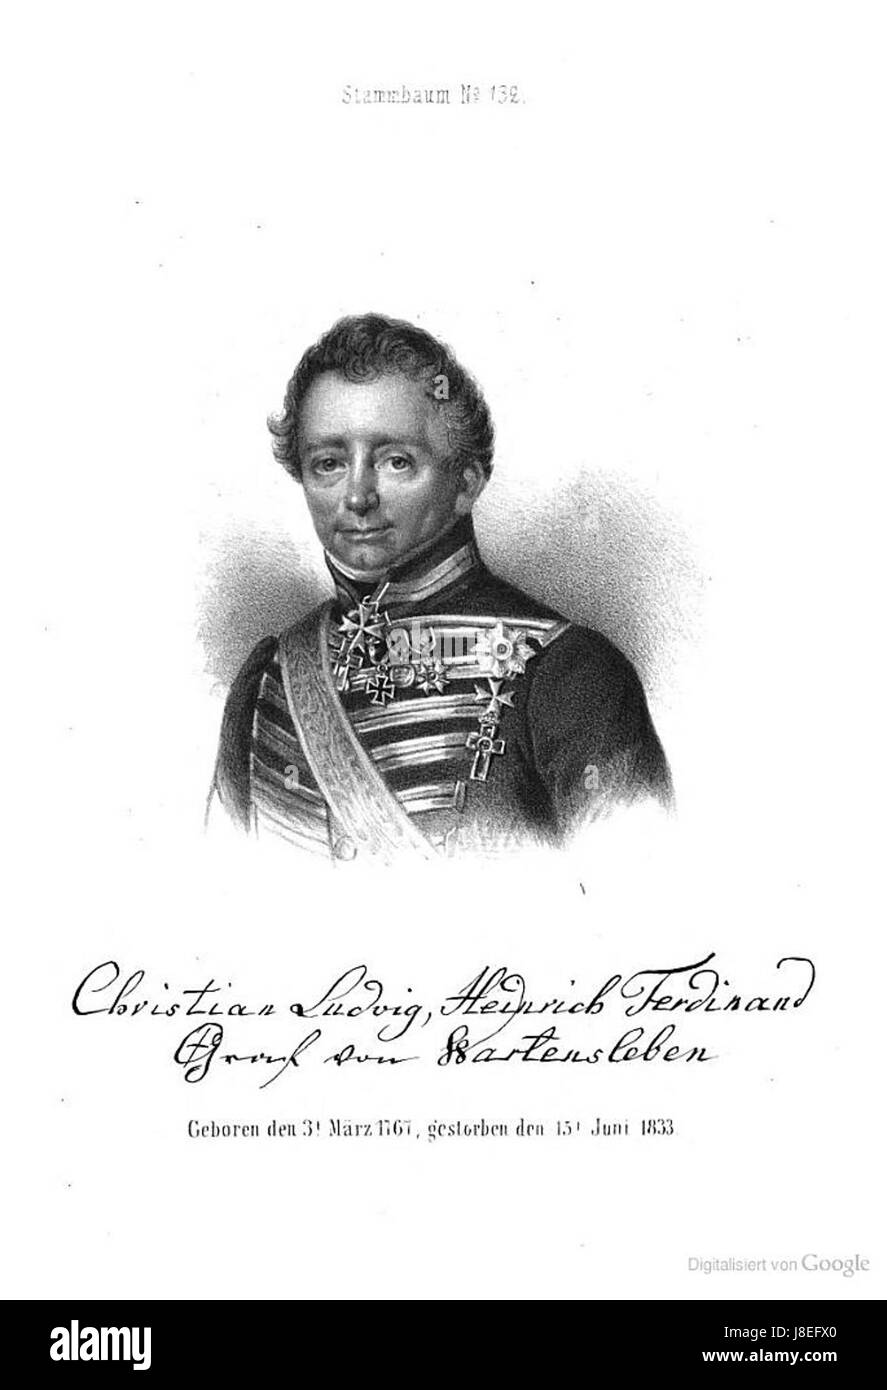 Ludwig Christian heinrich Ferdinand von Wartensleben Stock Photo